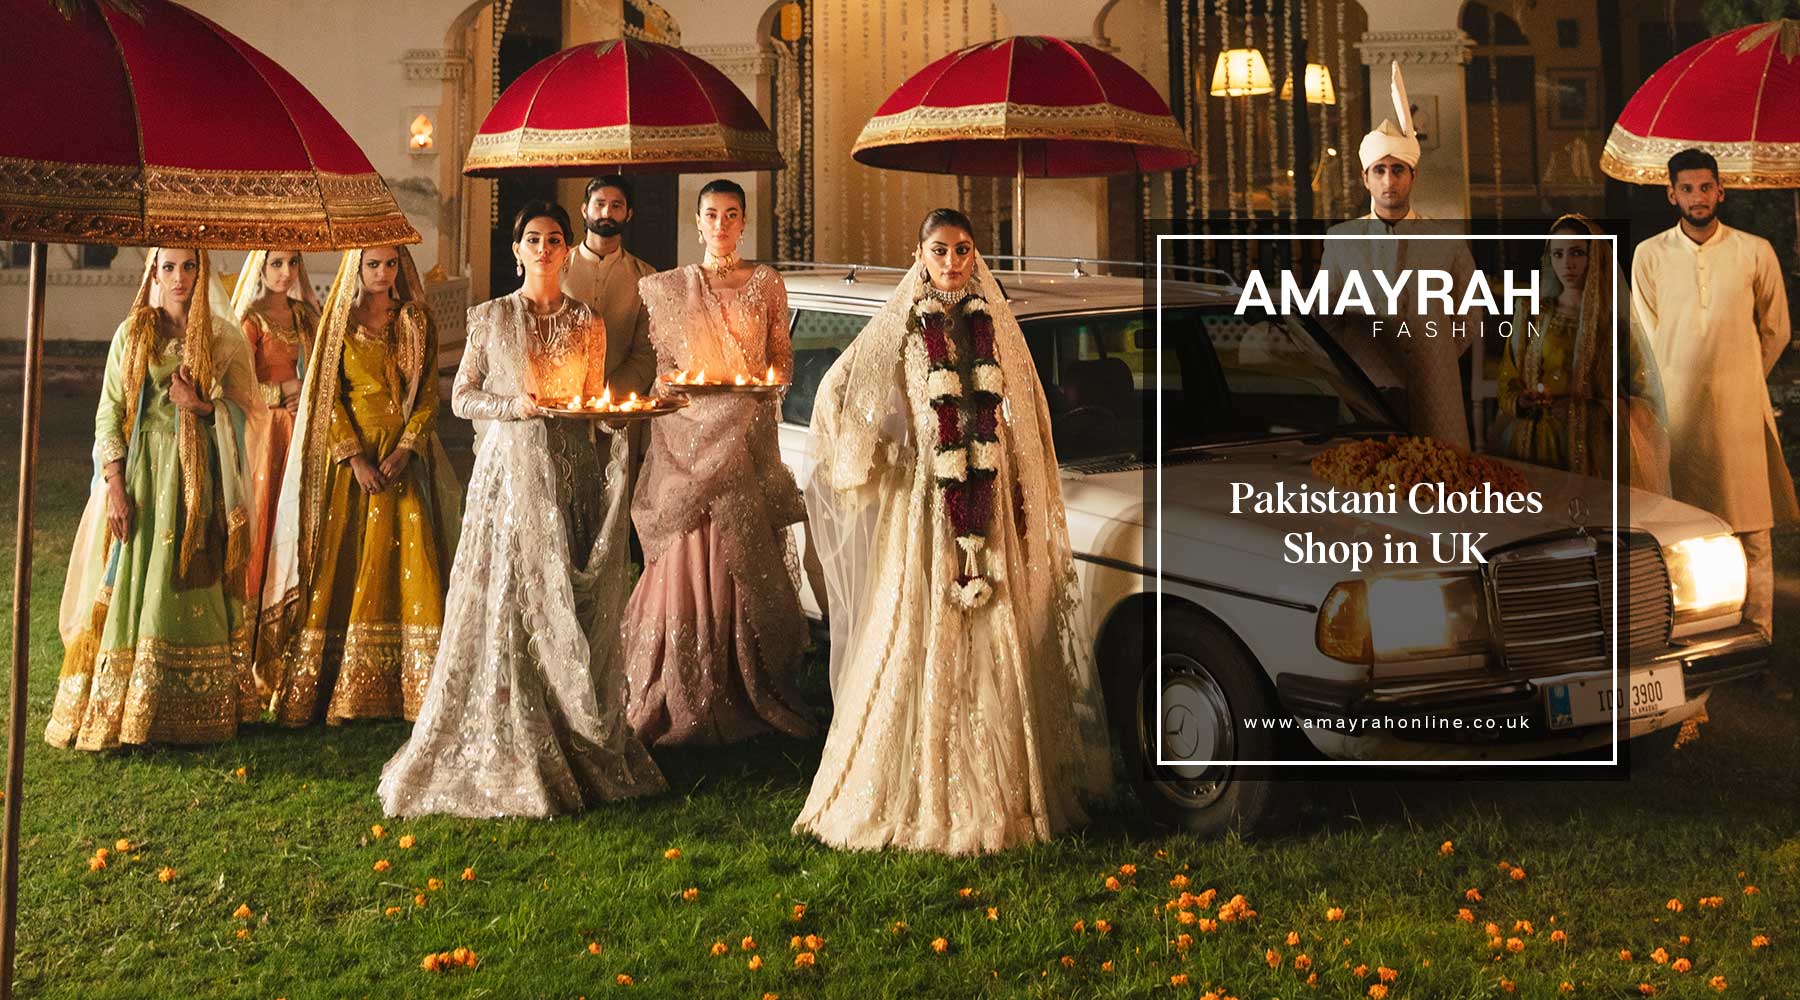 Explore the UK's Top Pakistani Clothing Store: Amayrah Fashion